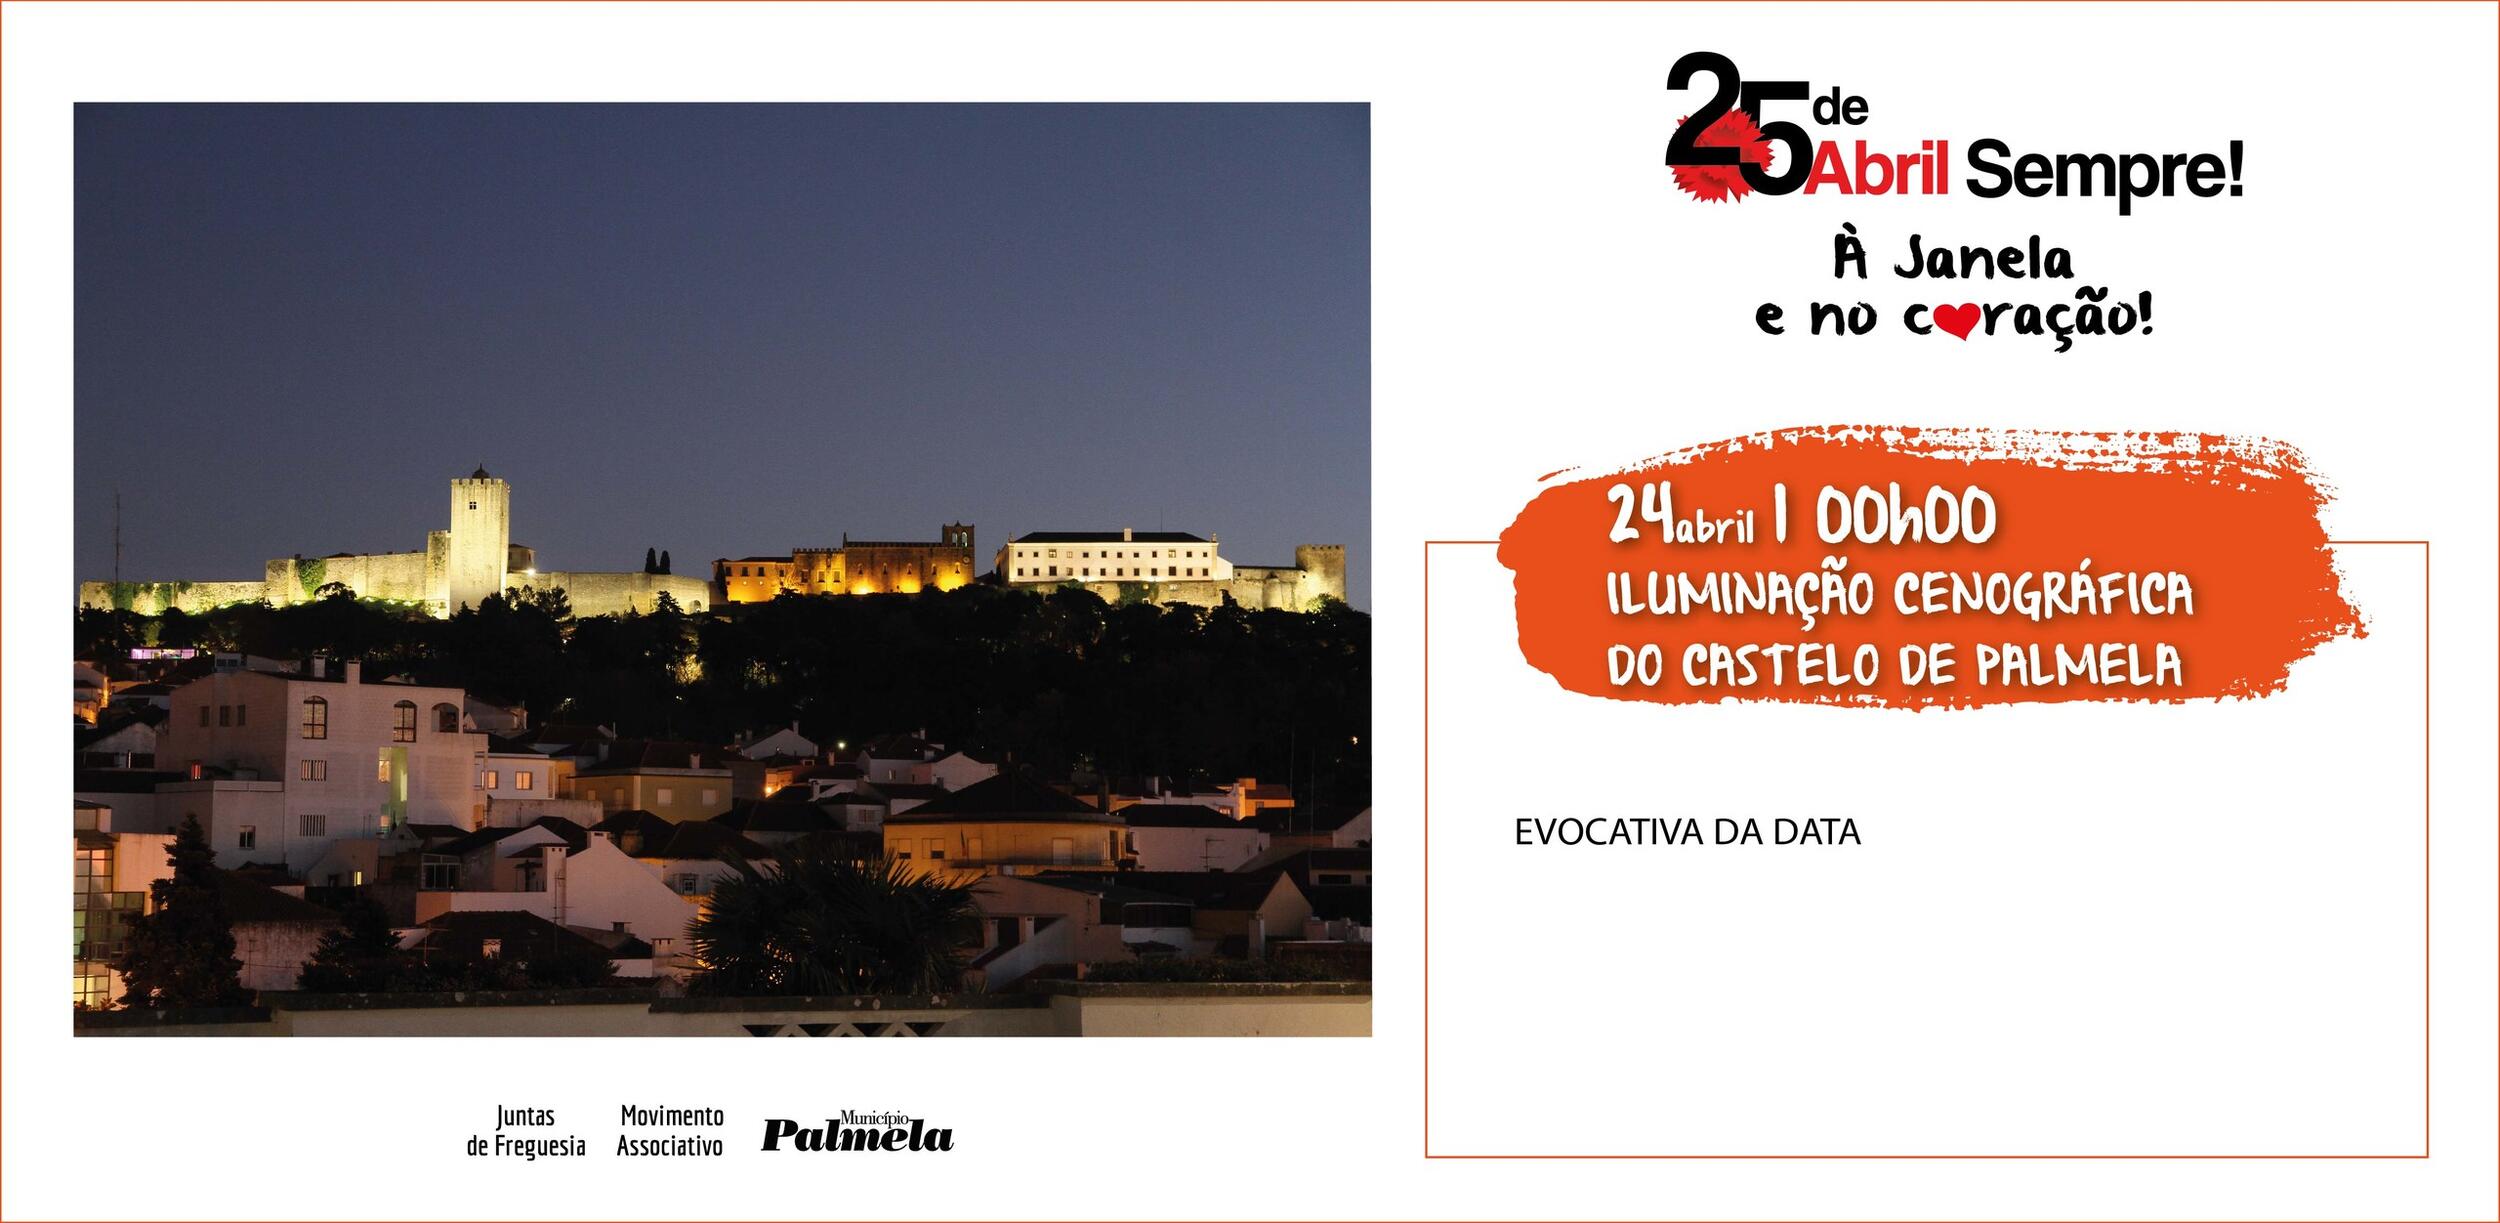 Hoje às 24h00: Iluminação cenográfica do Castelo de Palmela